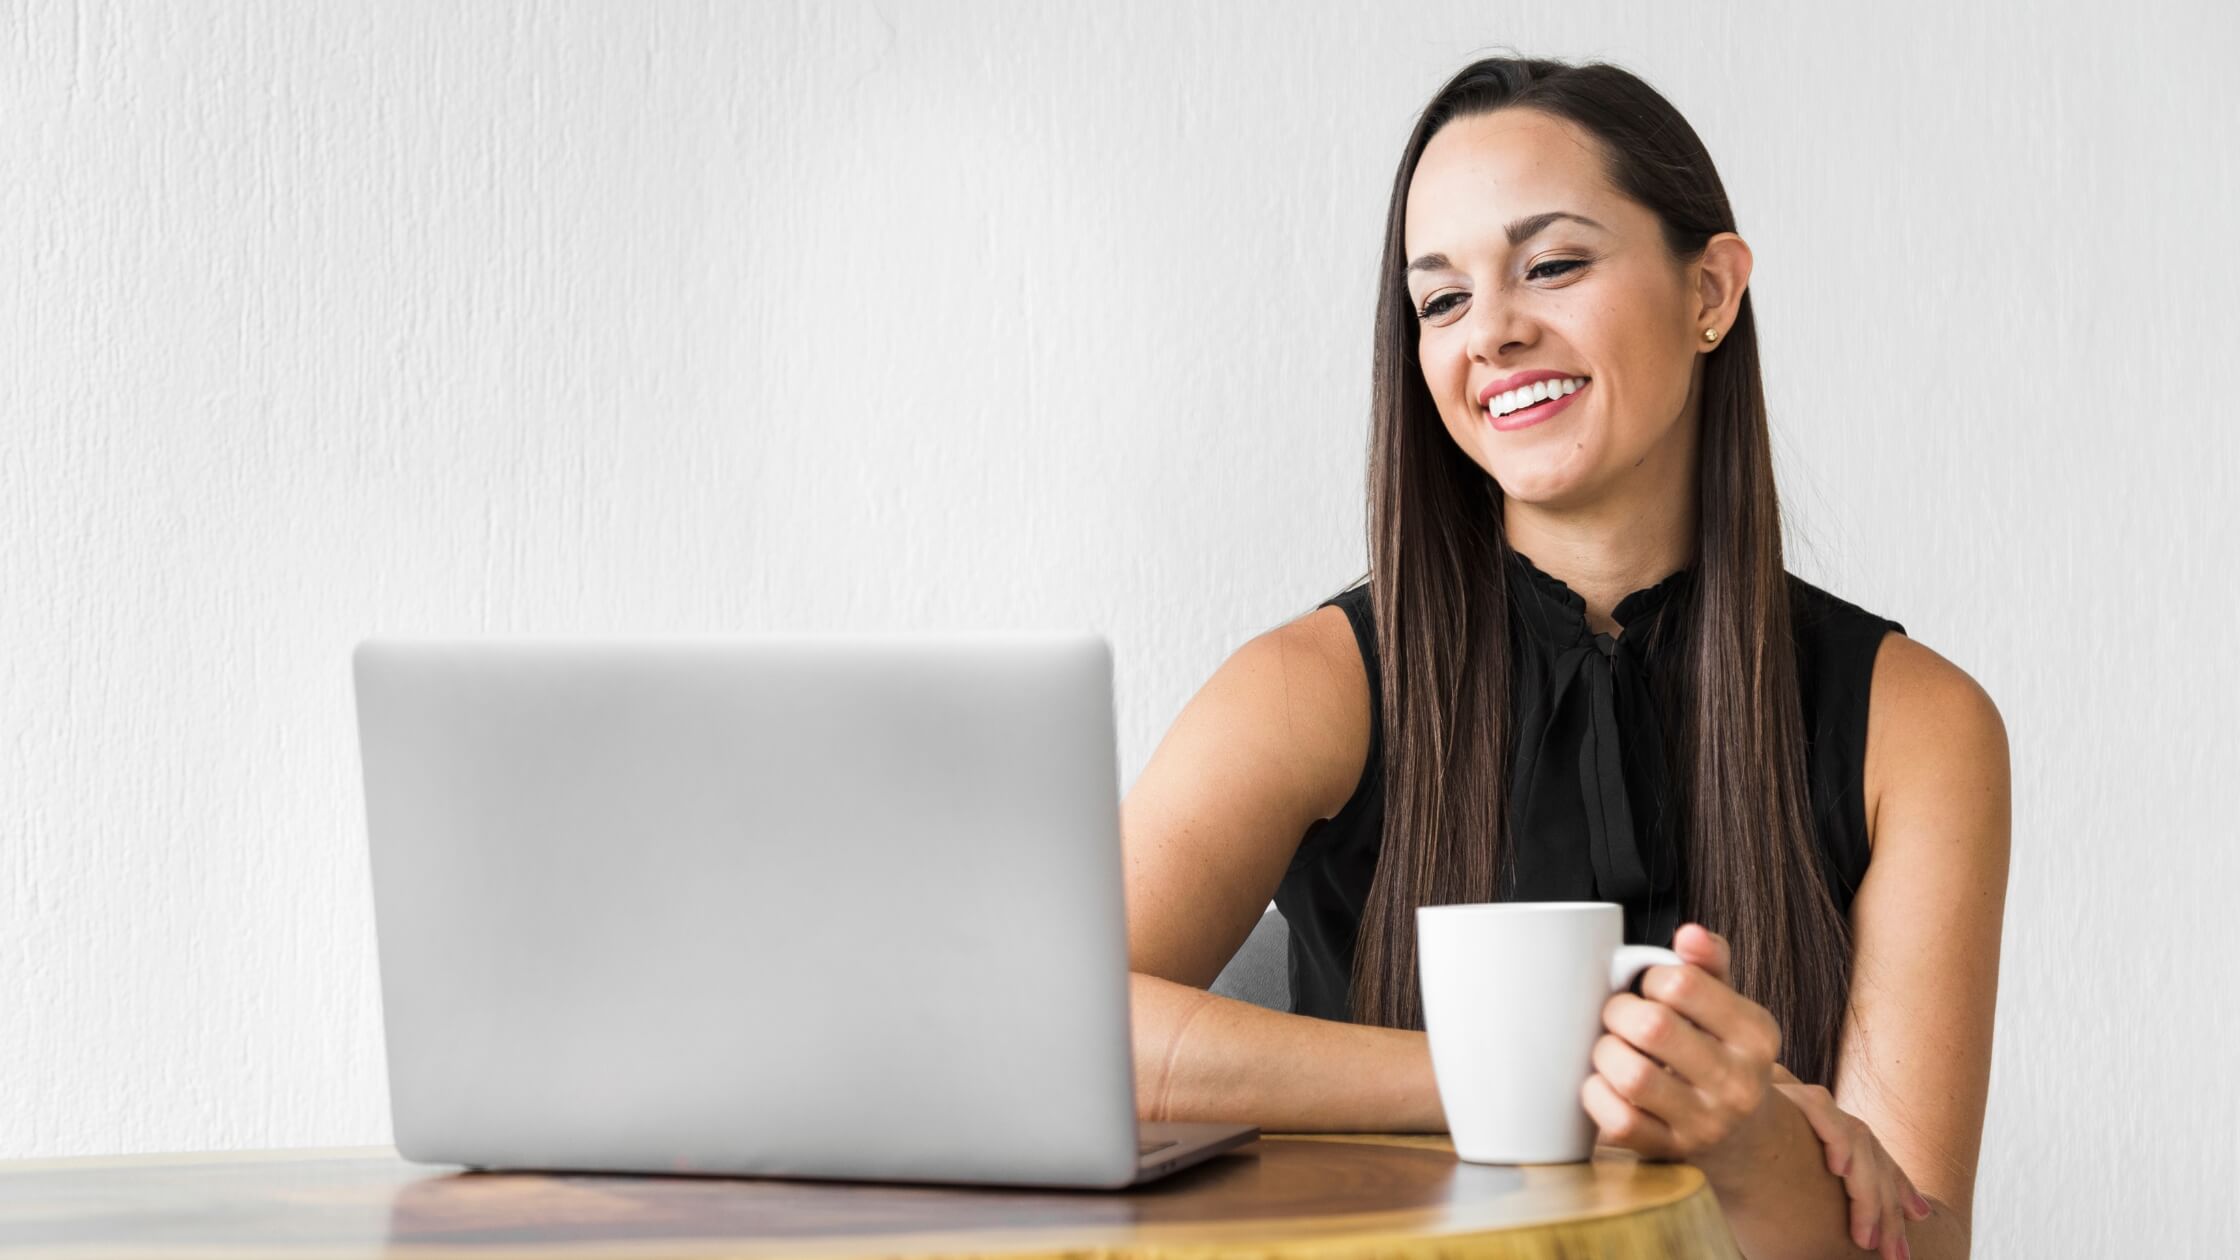 Muier vestida con blusa color negro, sonriendo mientras mira su laptop y sostiene una taza blanca de café en su mano